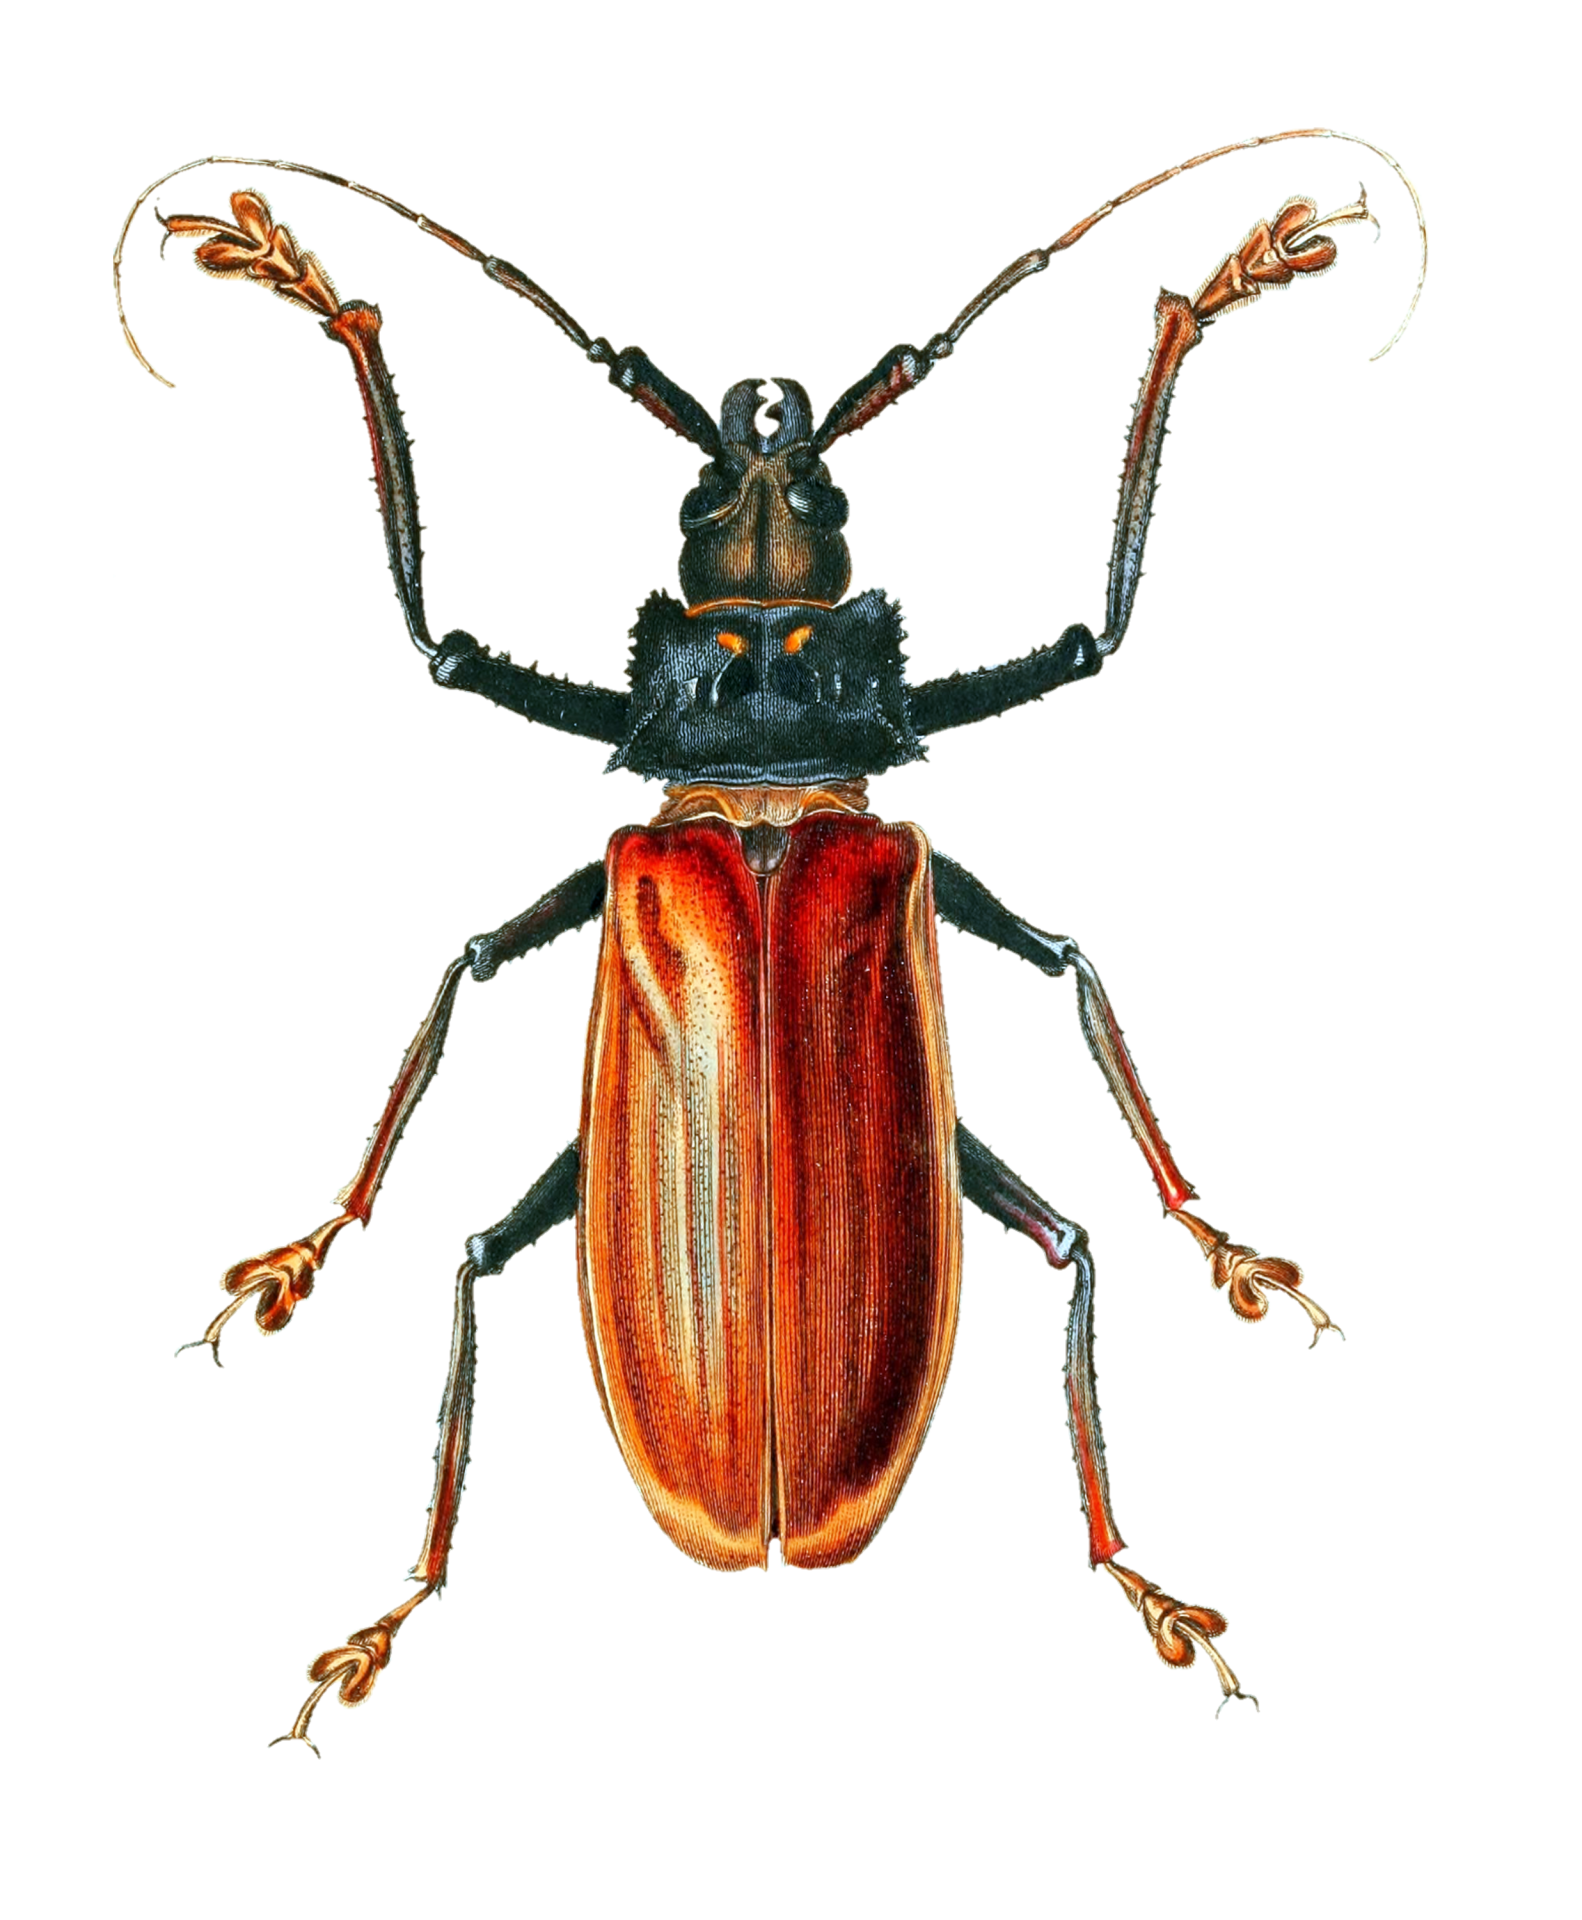 Arte vintage de escarabajo insecto